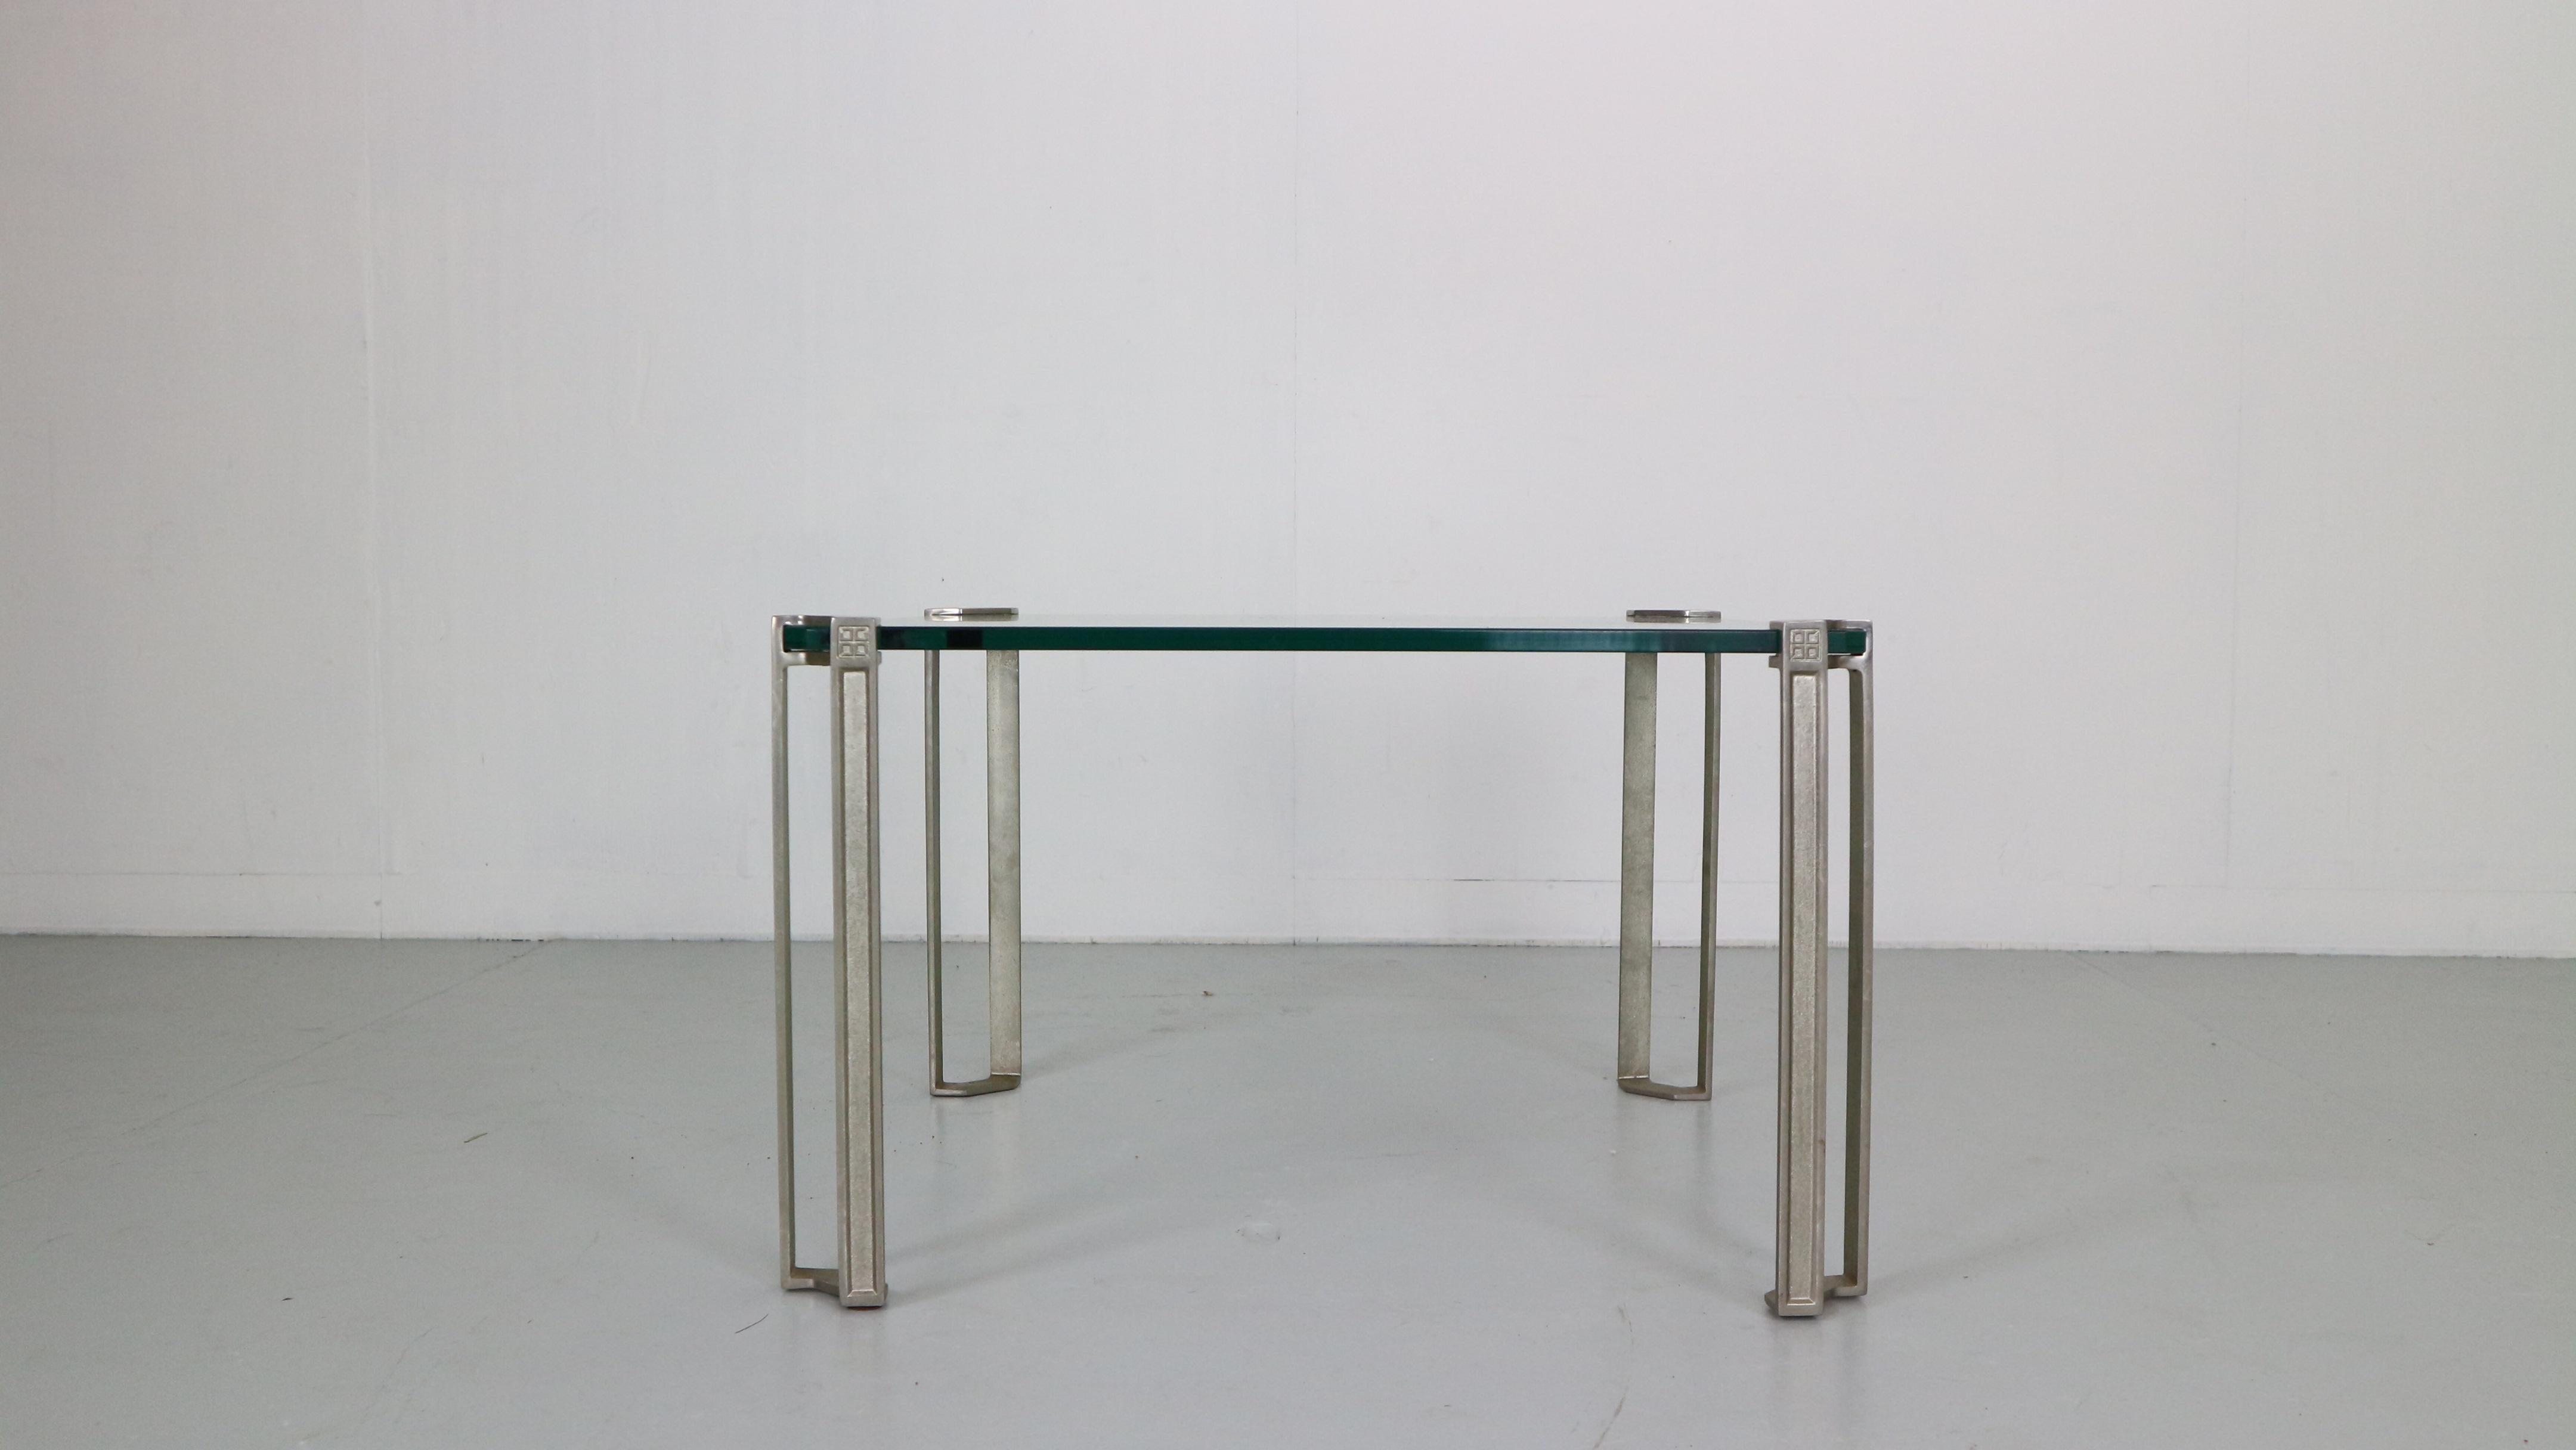 Table basse carrée en verre avec pieds en bronze moulé design by Peter Ghyczy 1970, Allemagne.

Le plateau en verre épais est soutenu dans les coins par les lourds pieds en bronze, ce qui donne l'impression qu'il flotte. 
Plateau de table en verre